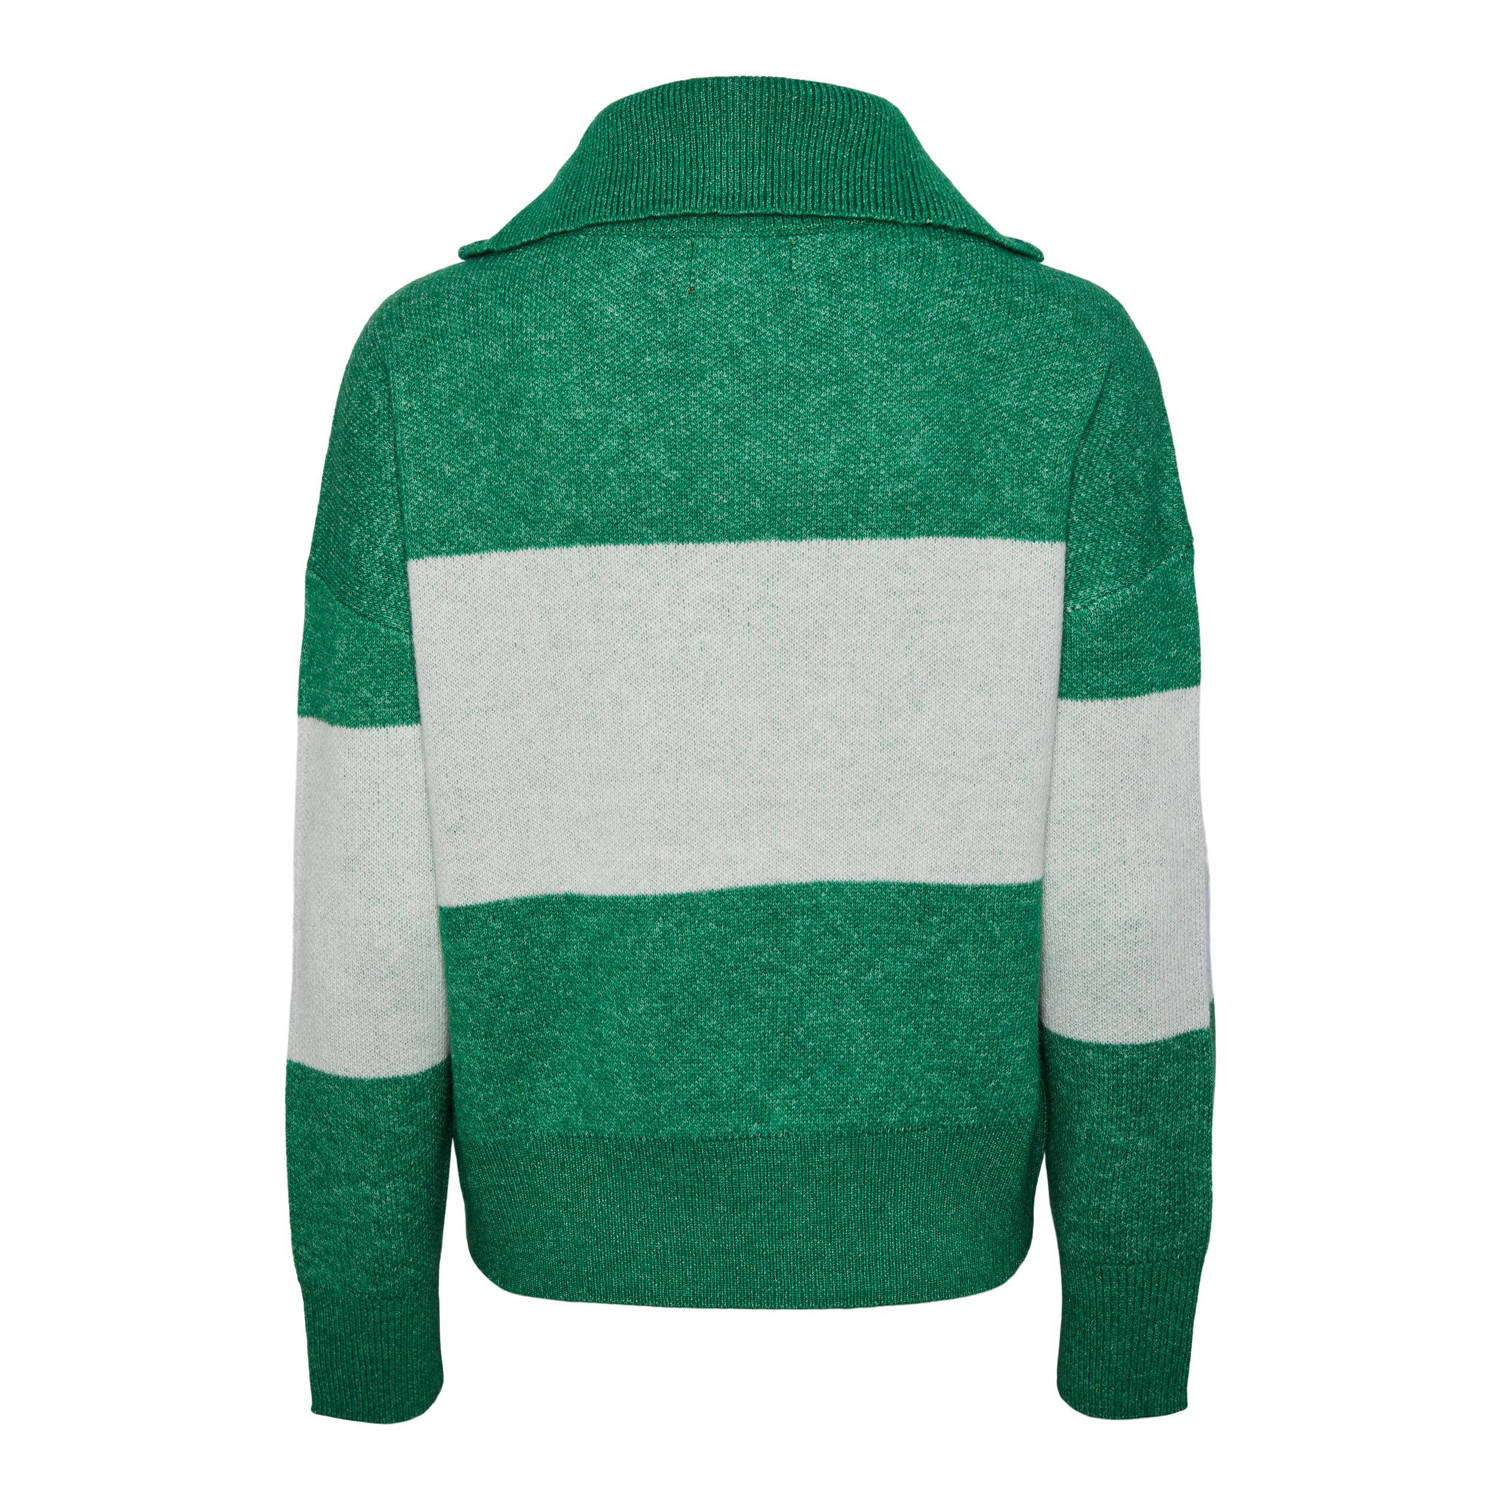 PIECES fijngebreide trui van gerecycled polyester groen ecru